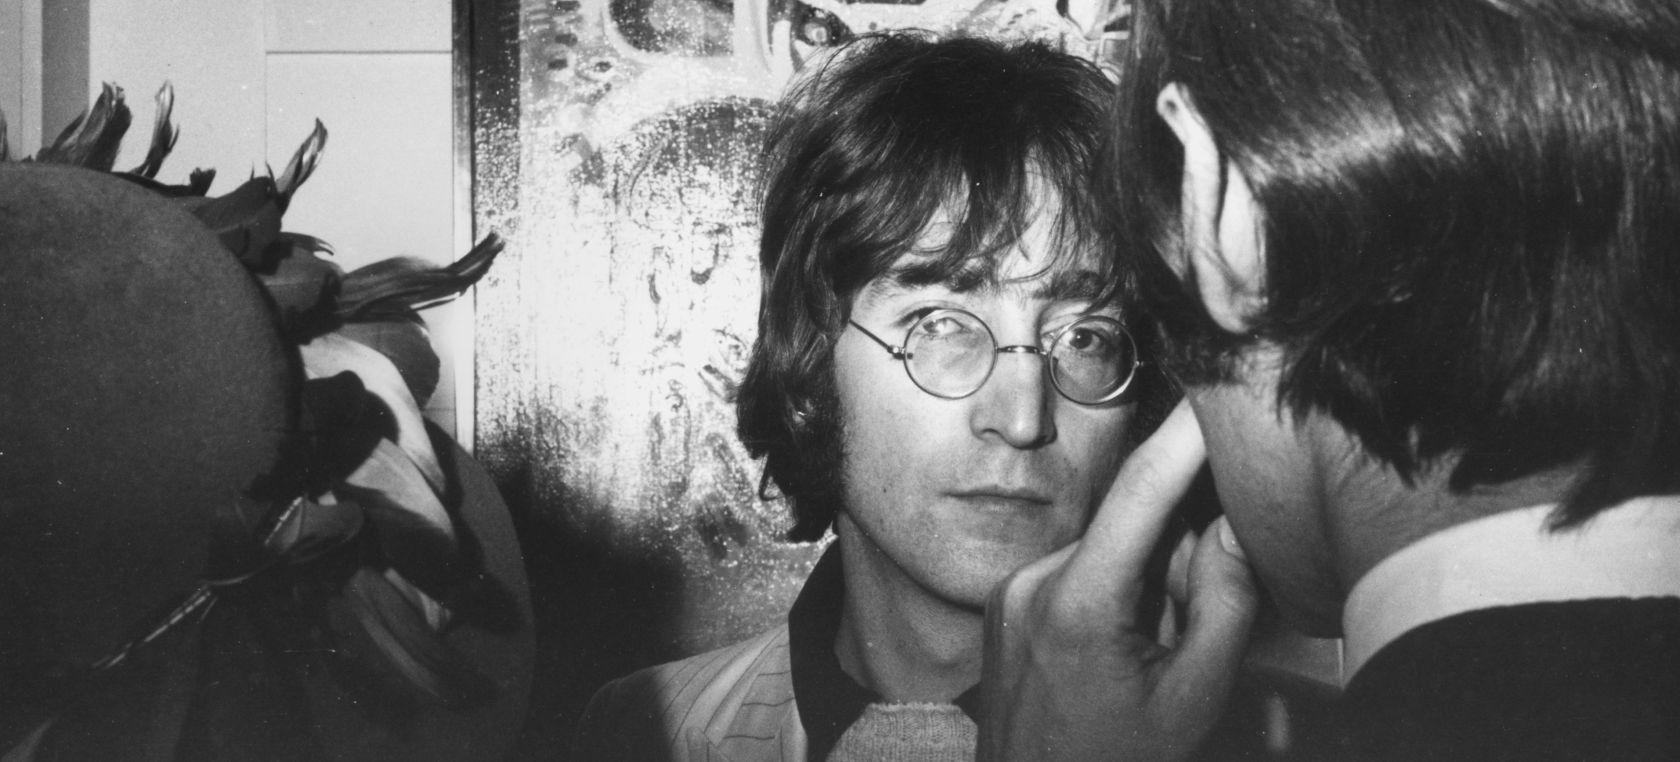 La historia de John Lennon y su amante con un OVNI: ‘Ojalá, nos hubiera llevado a los dos lejos’